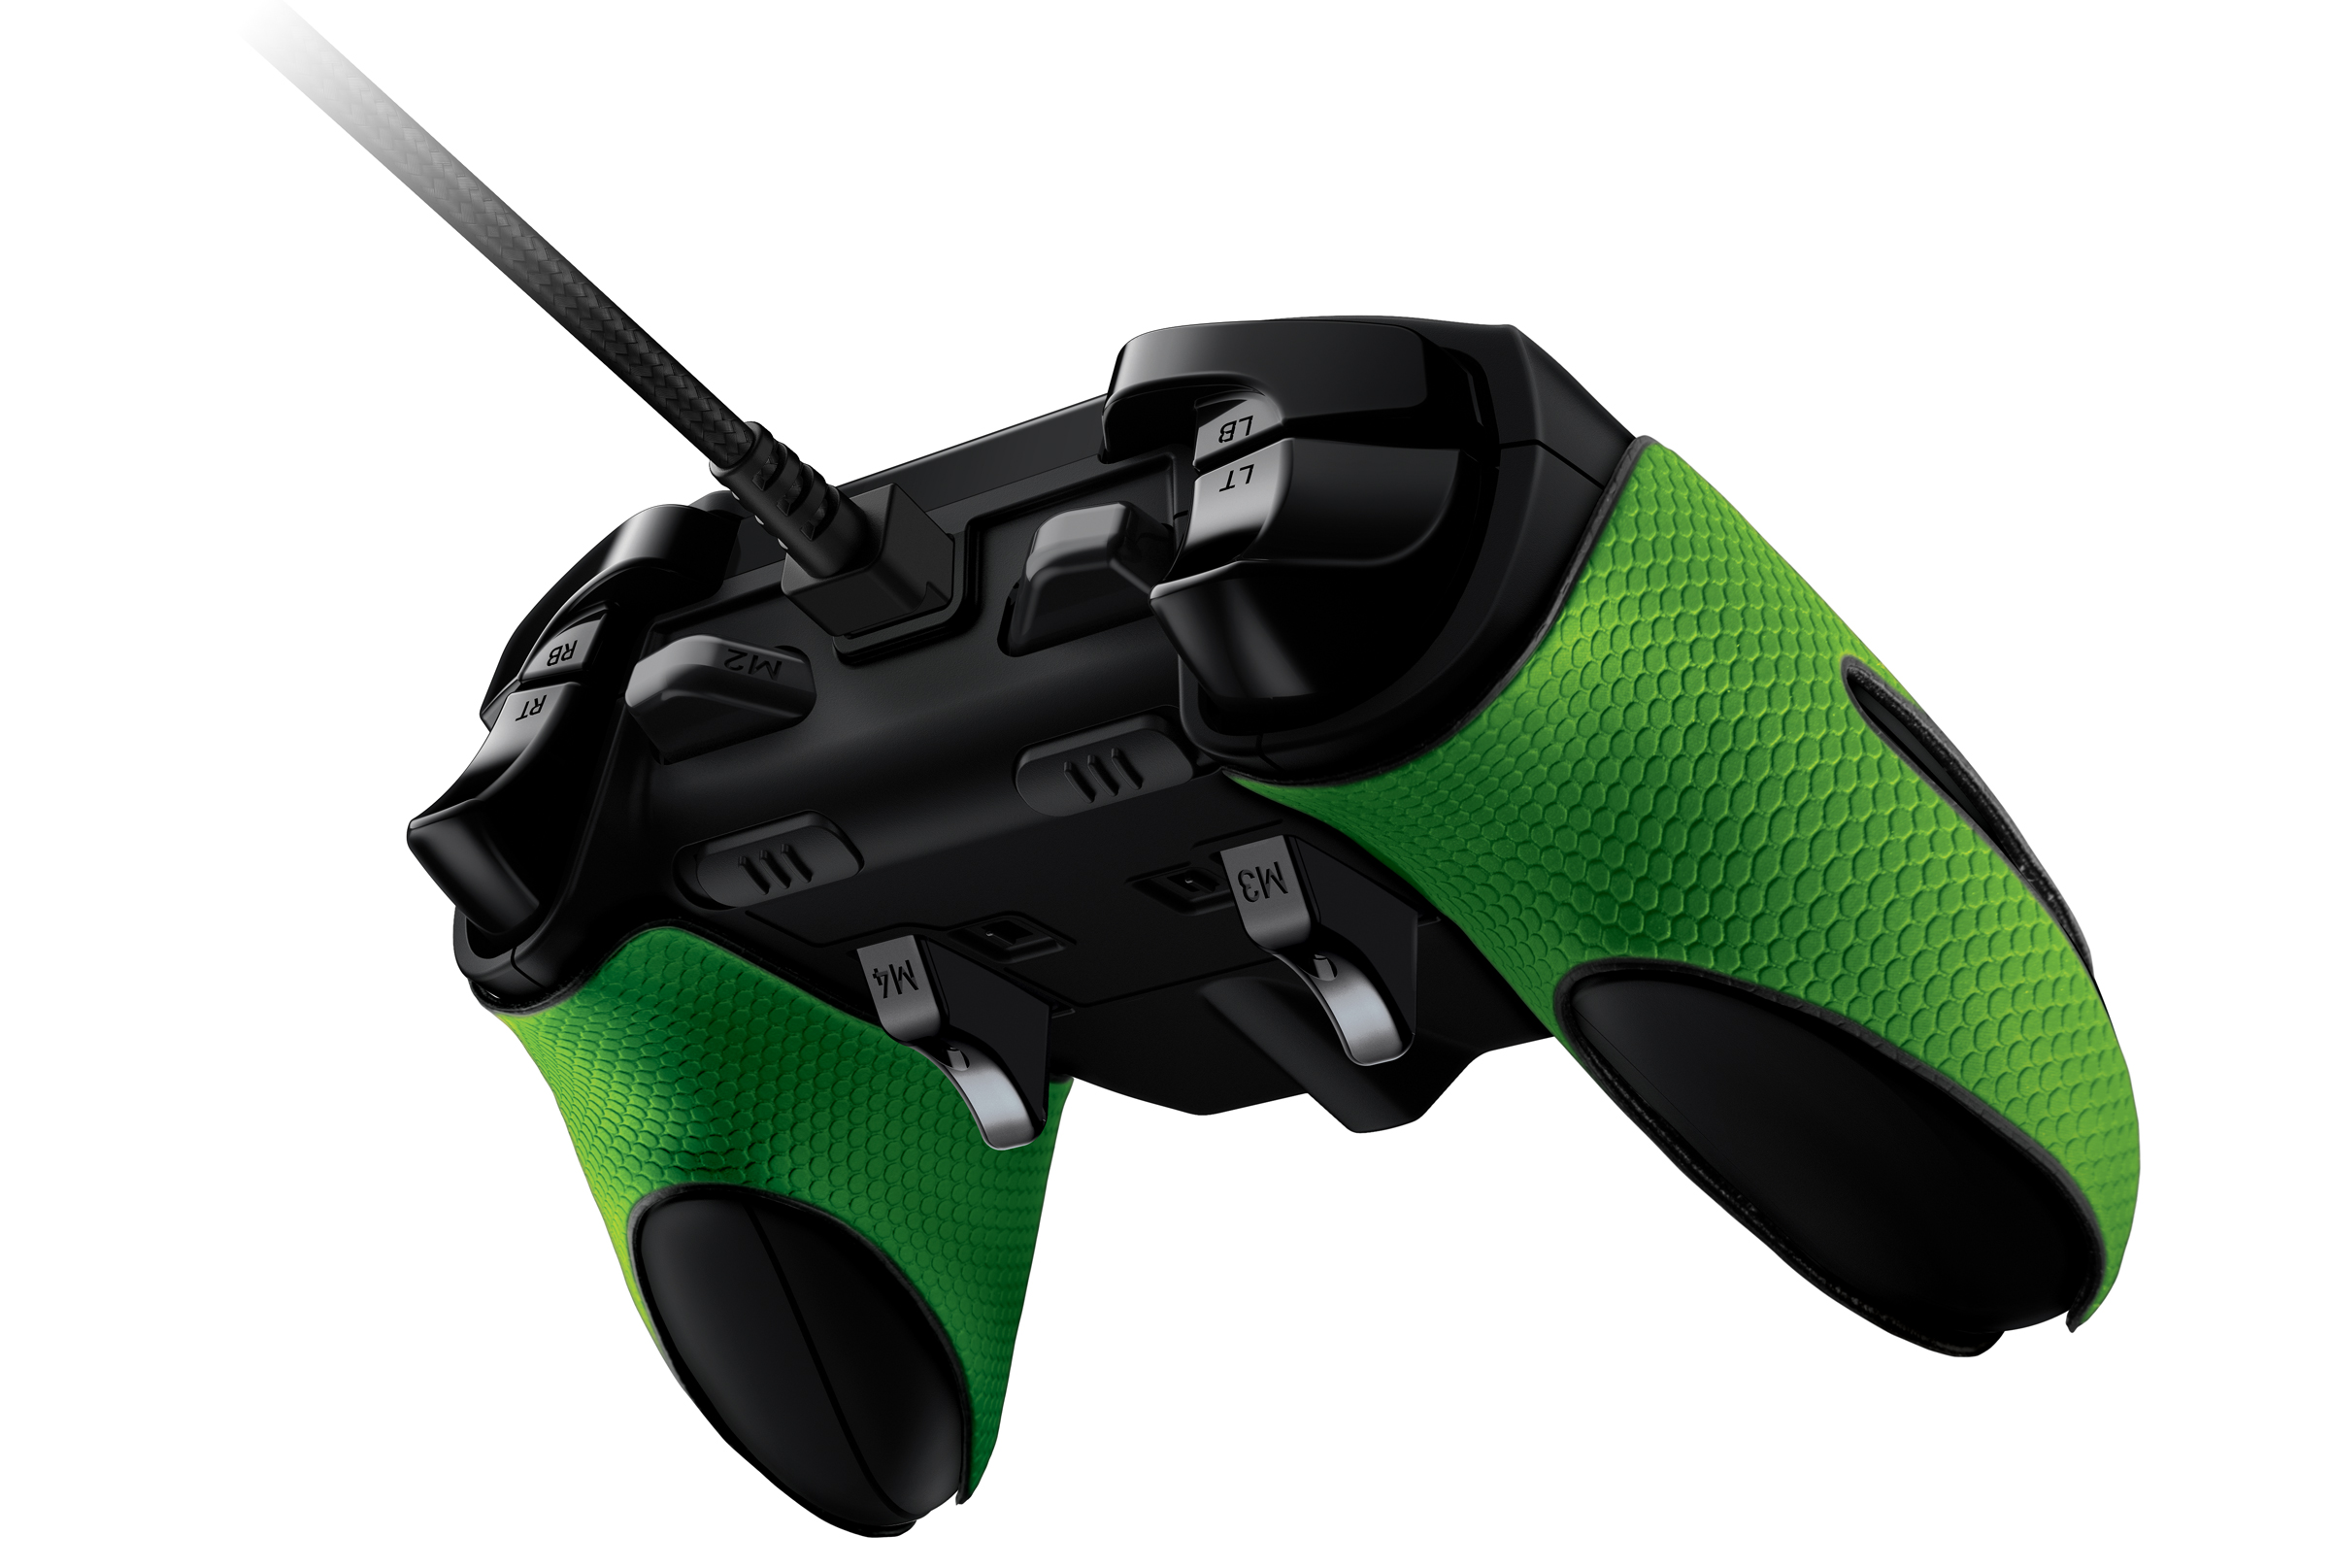 Razer Wildcat Xbox One Controller Underside Triggers & Bumpers